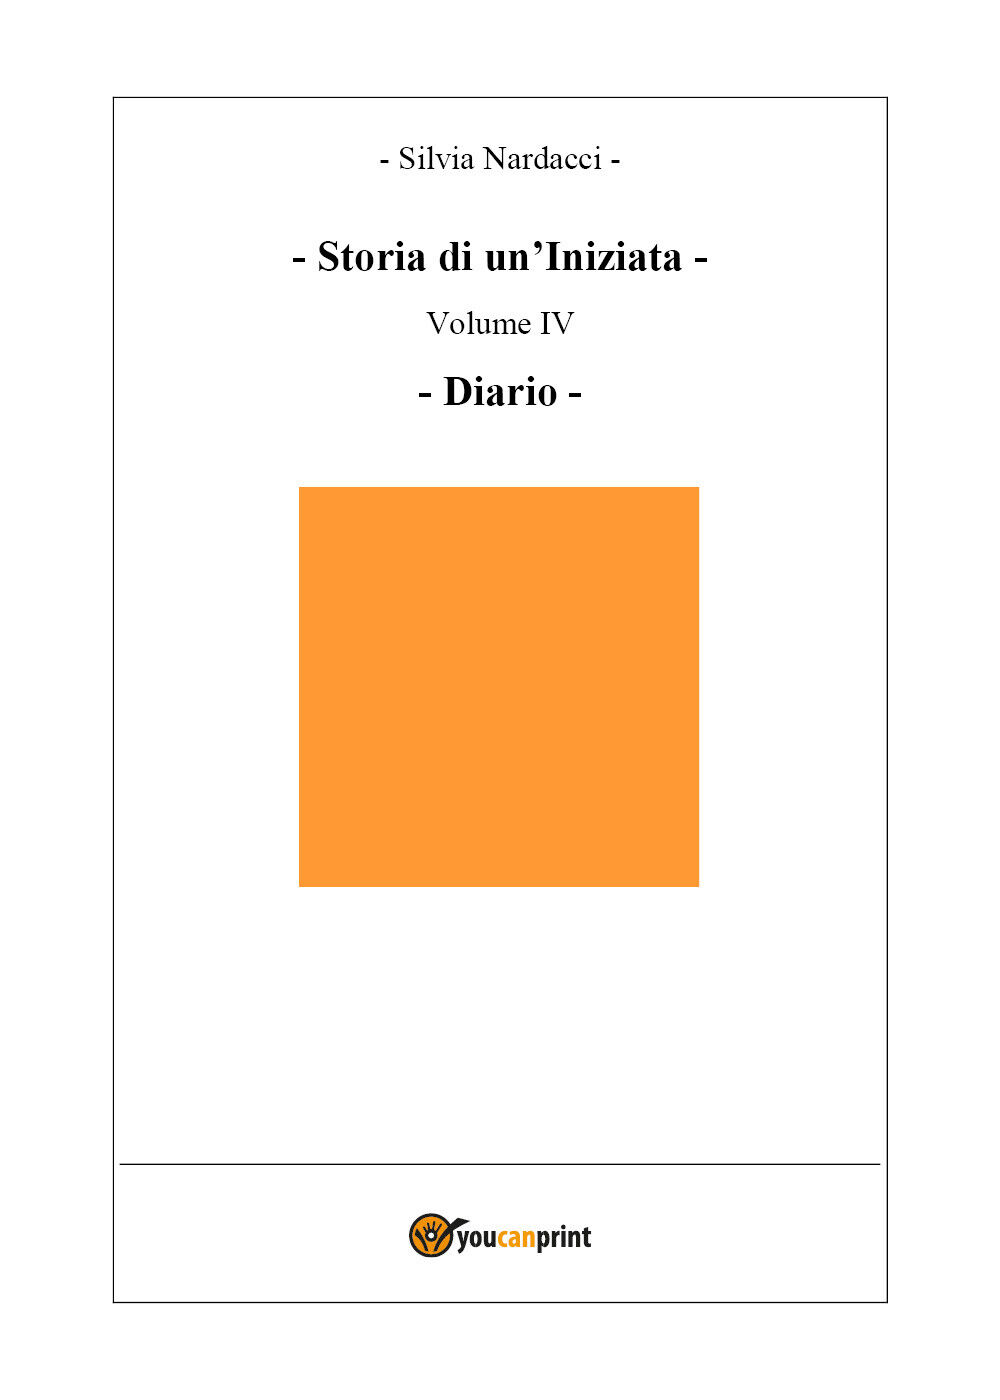 Storia di un?Iniziata-volume IV-Diario di Silvia Nardacci,  2019,  Youcanprint